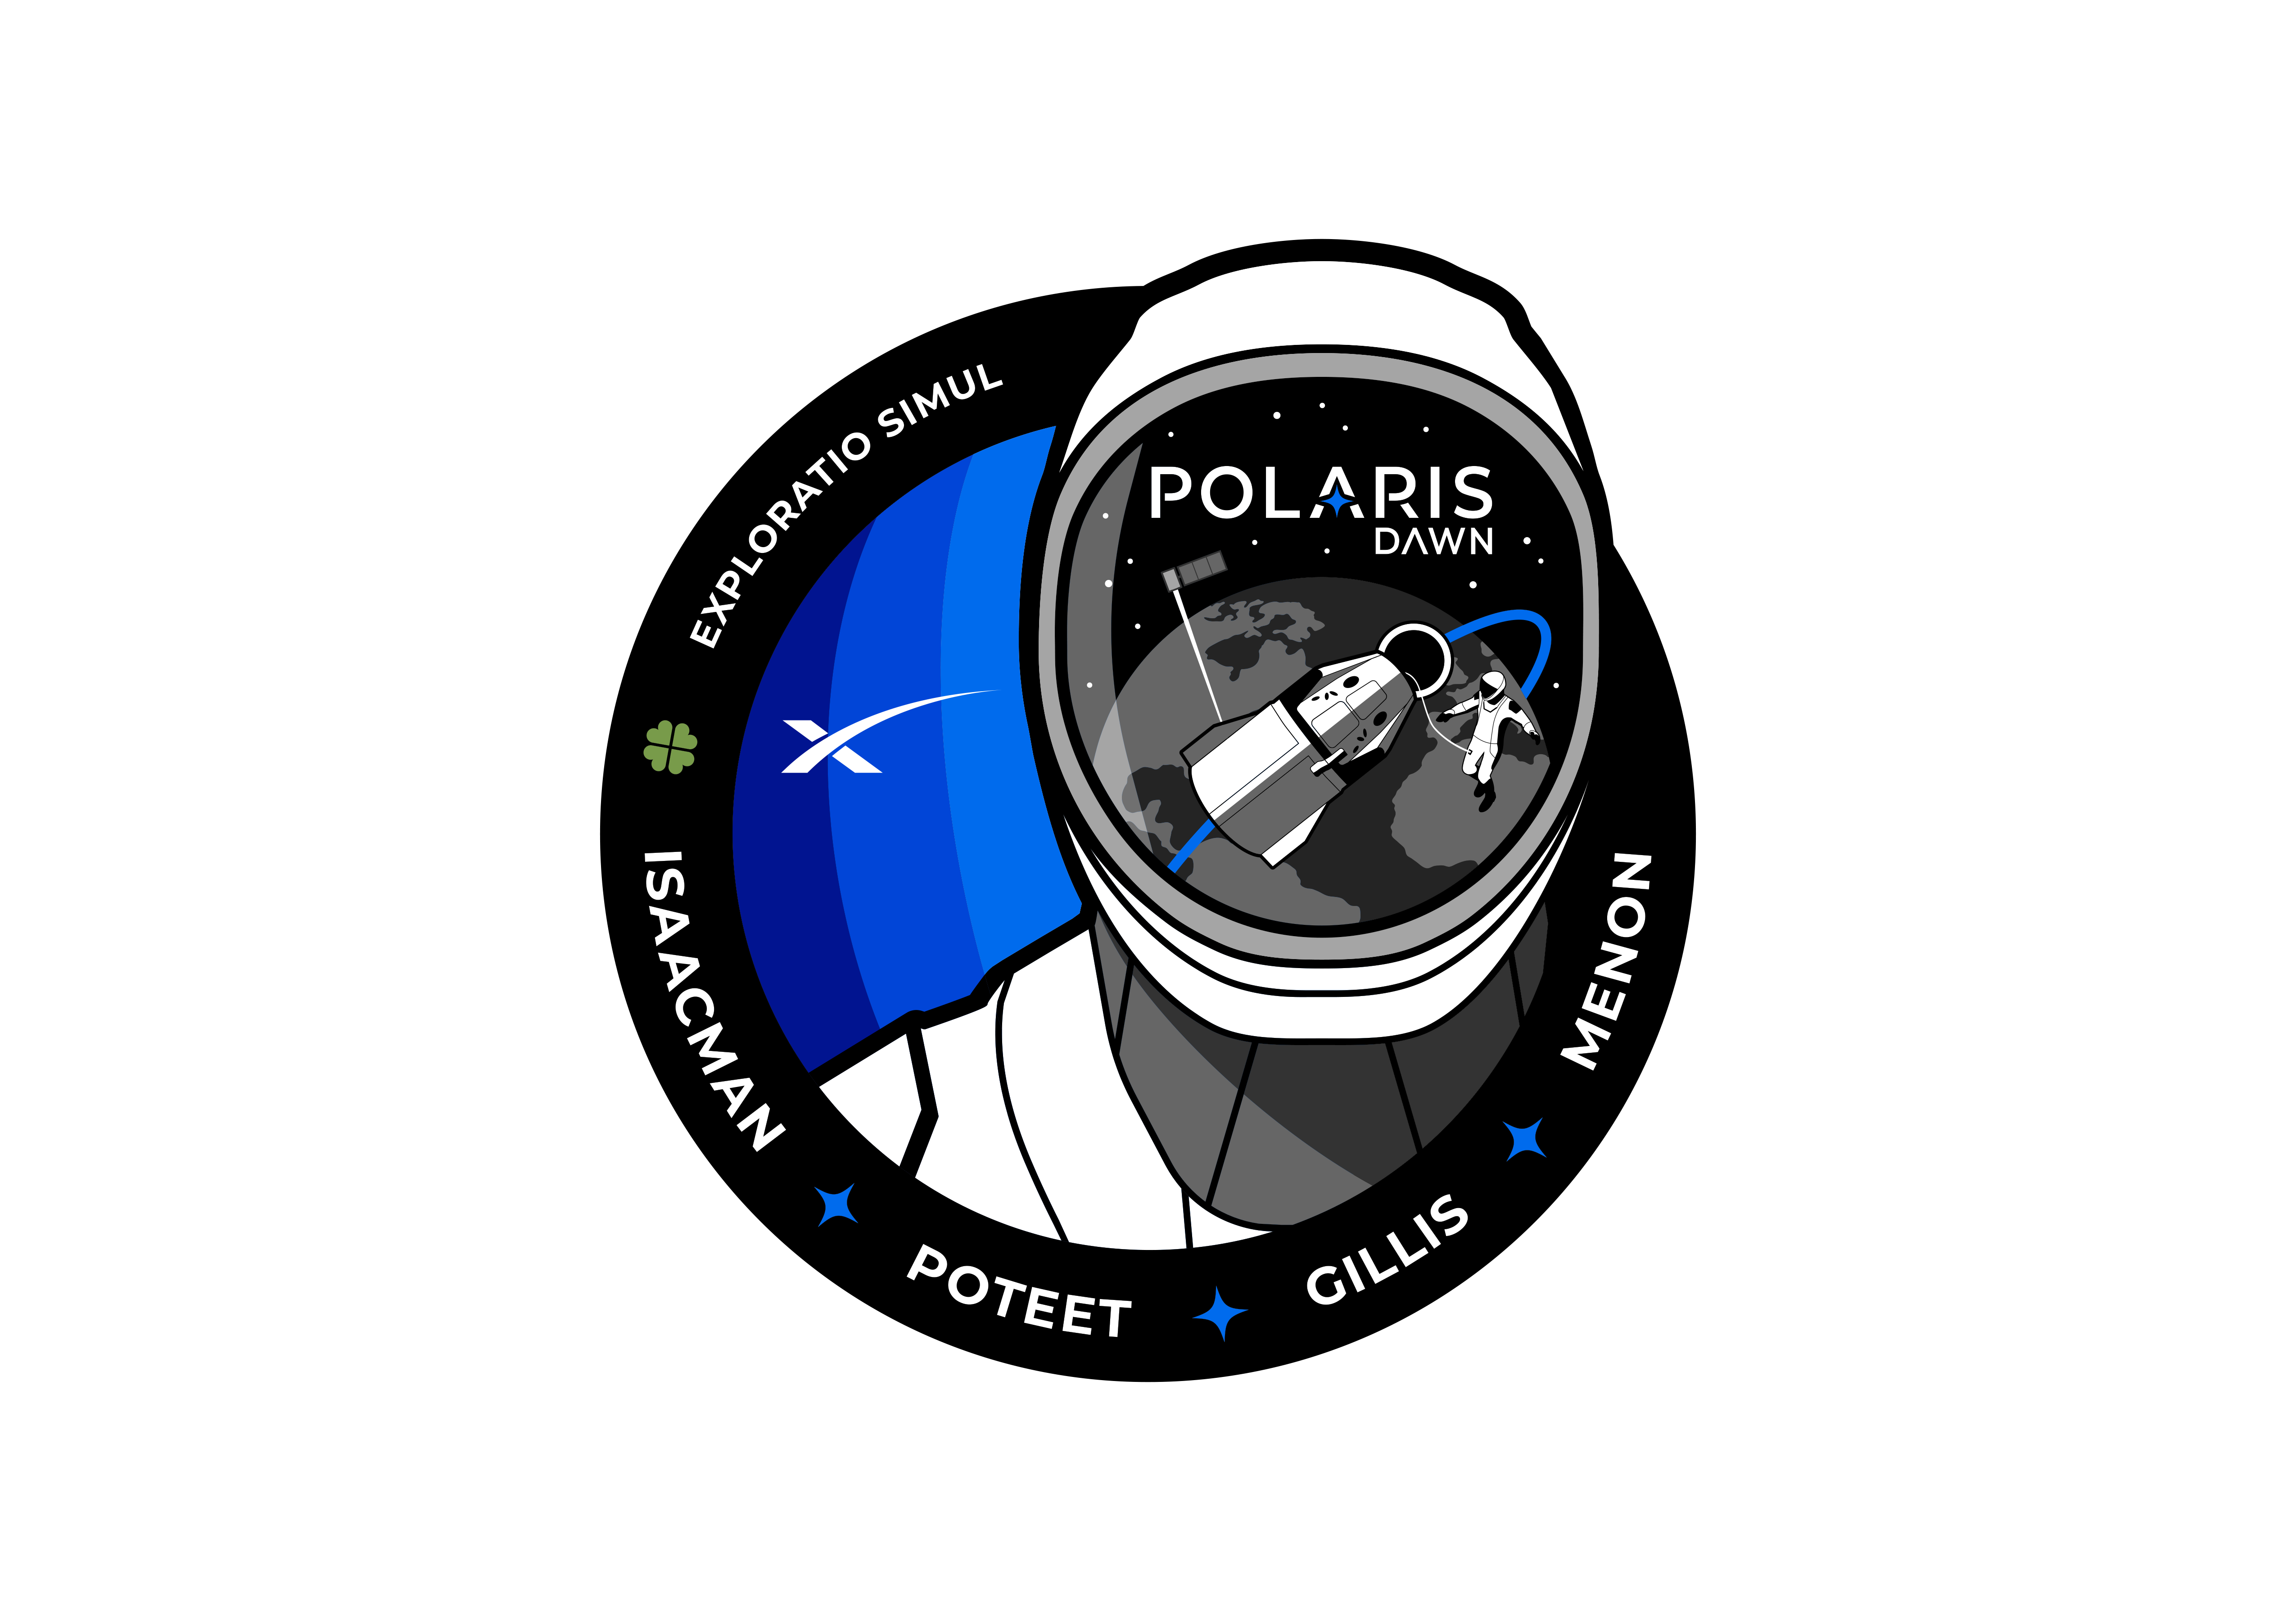 Logo misji Polaris Dawn (Źródło: Polaris)